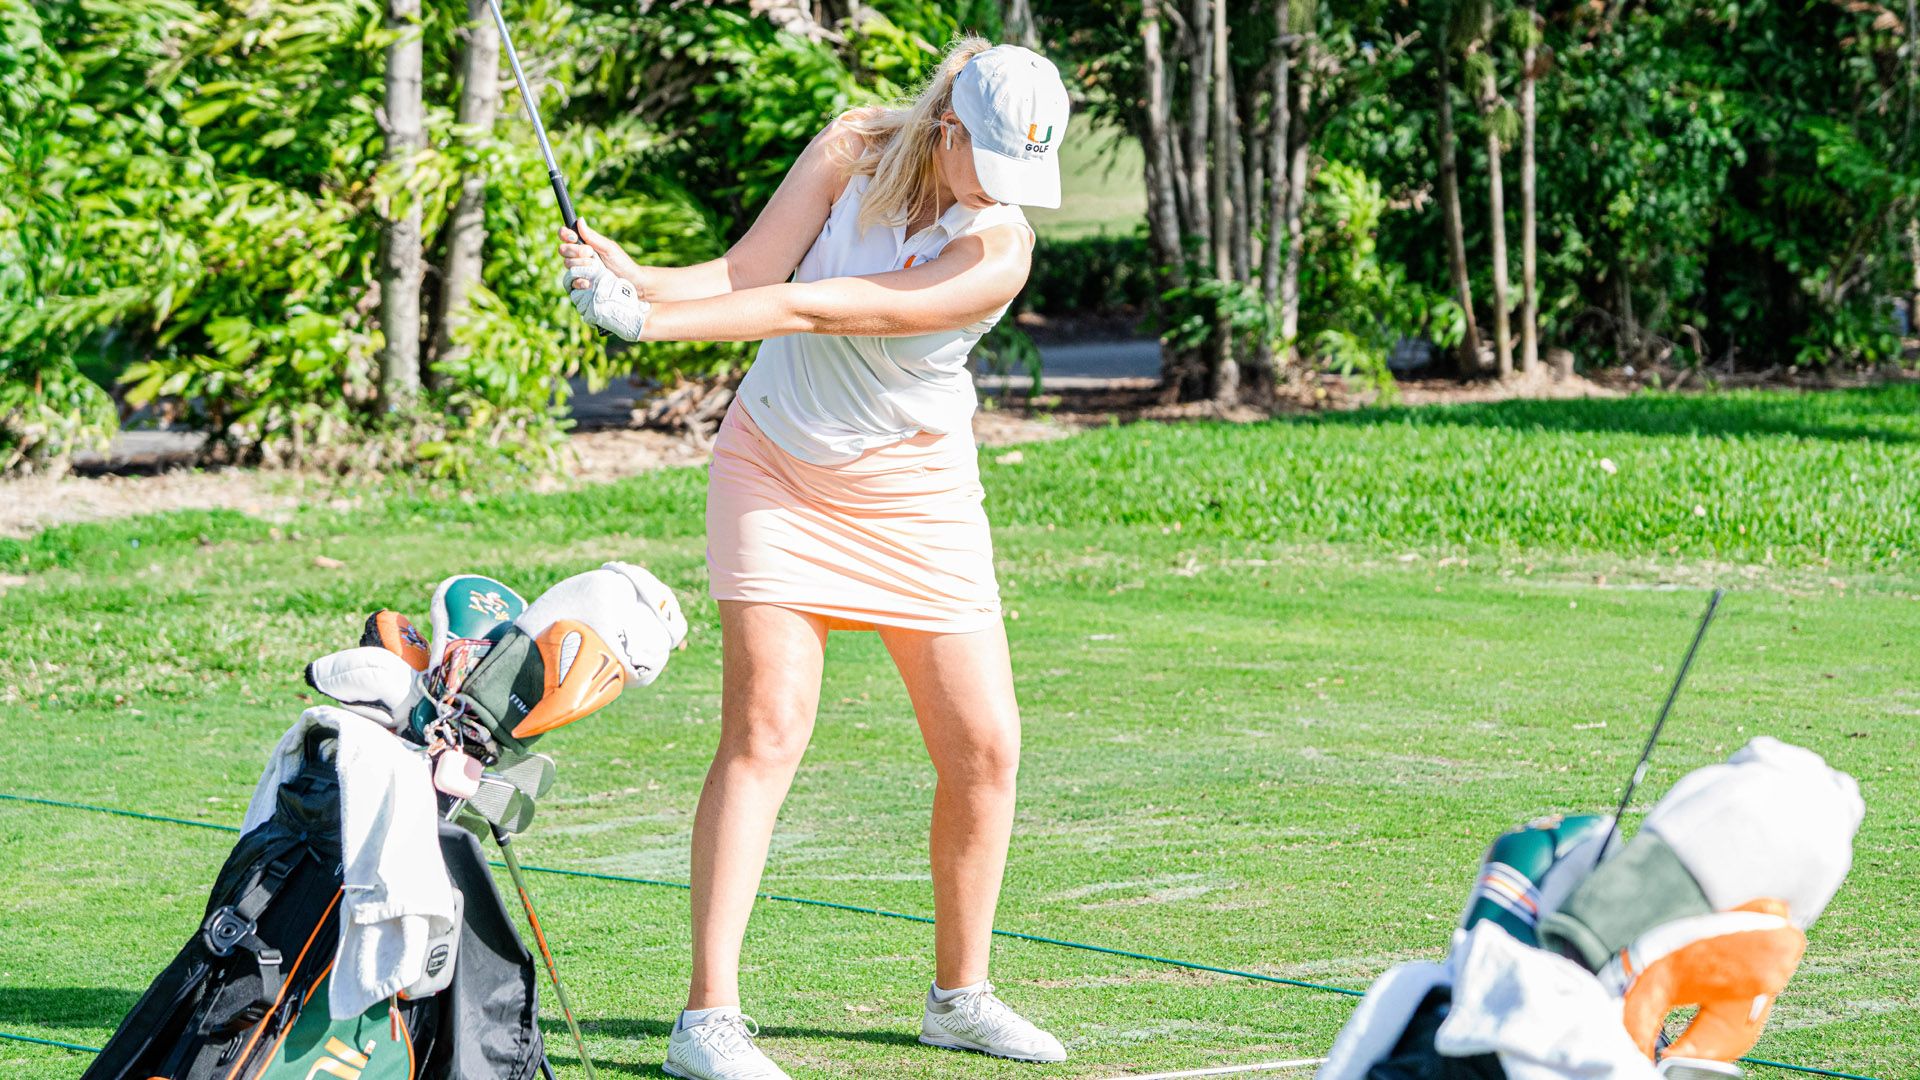 Golf Set to Compete at the Allstate Sugar Bowl Intercollegiate